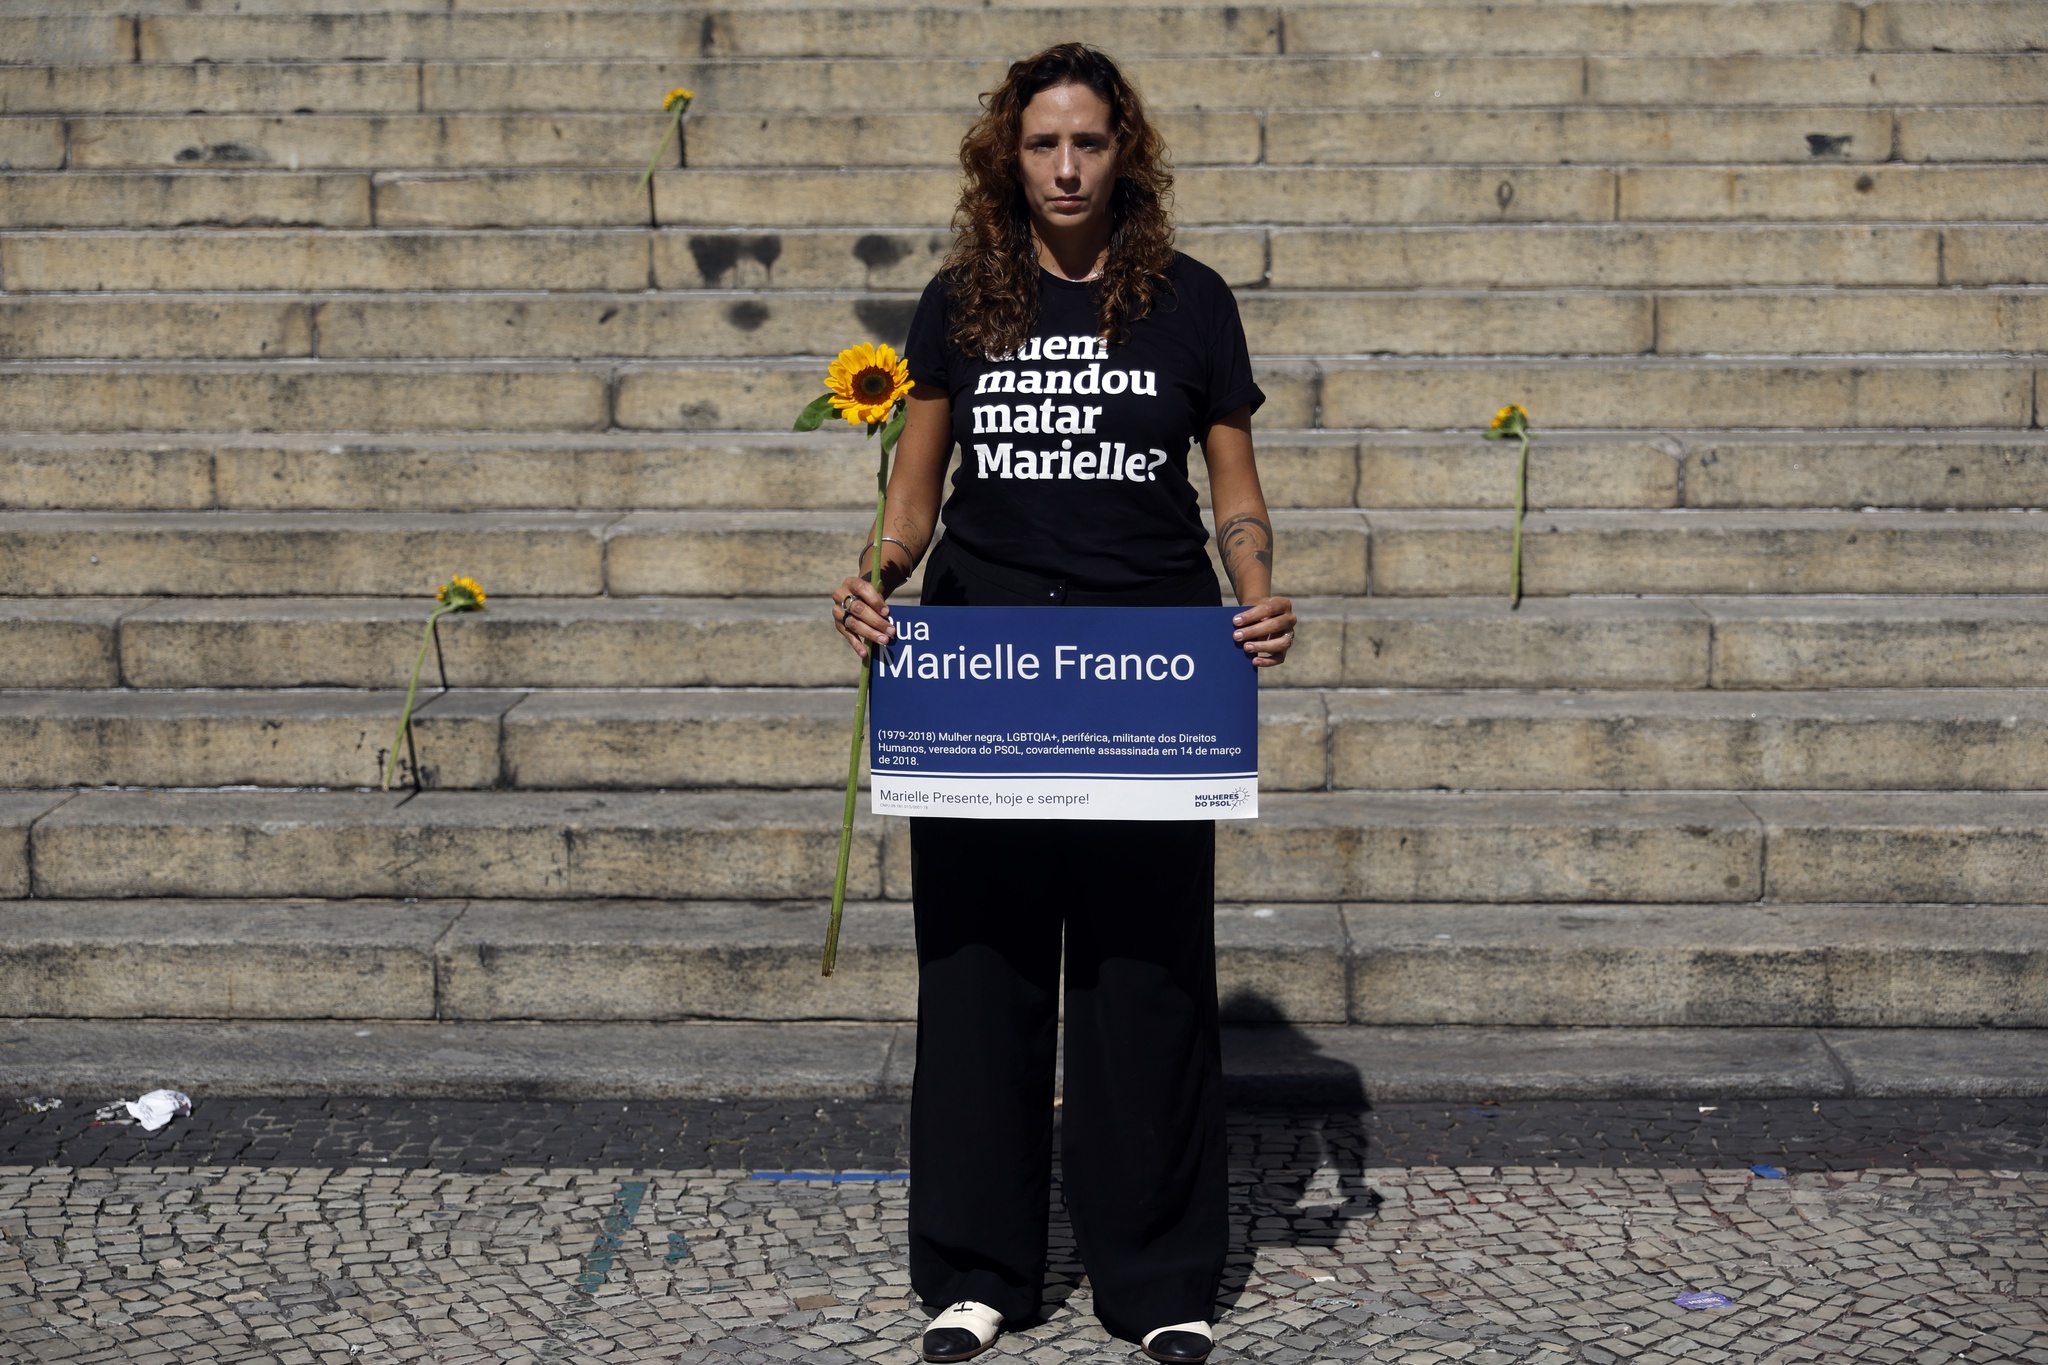 Le suspect du meurtre de Marielle Franco a identifié celui qui l’a embauché |  Brésil